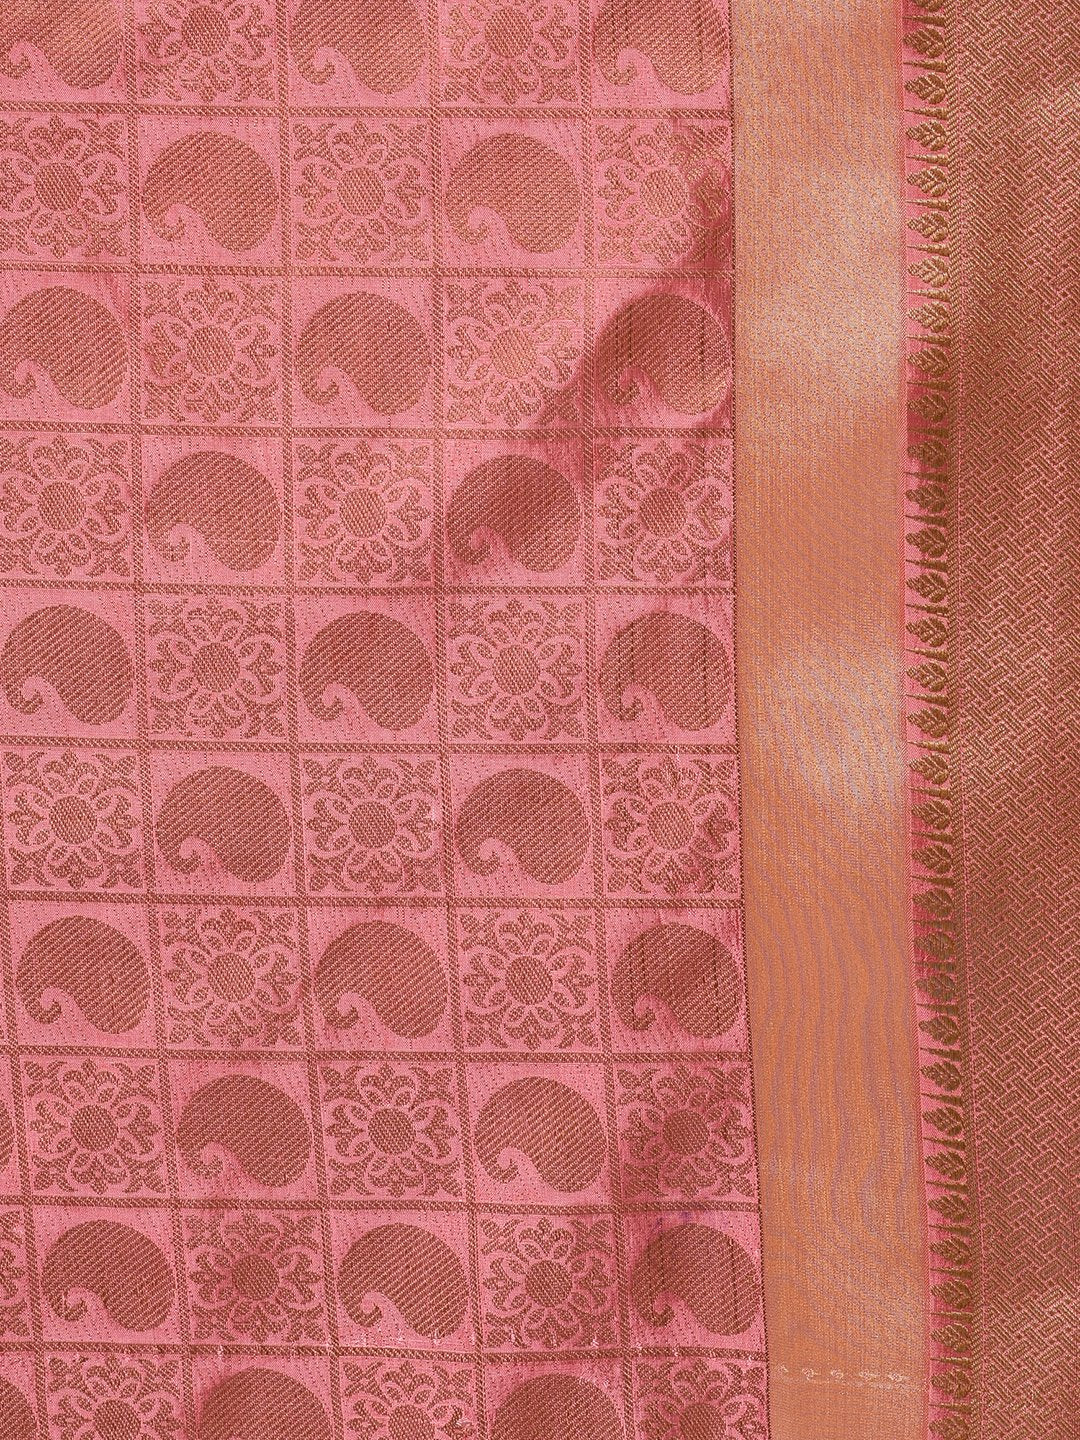 Handloom Saree In Onion Pink Color